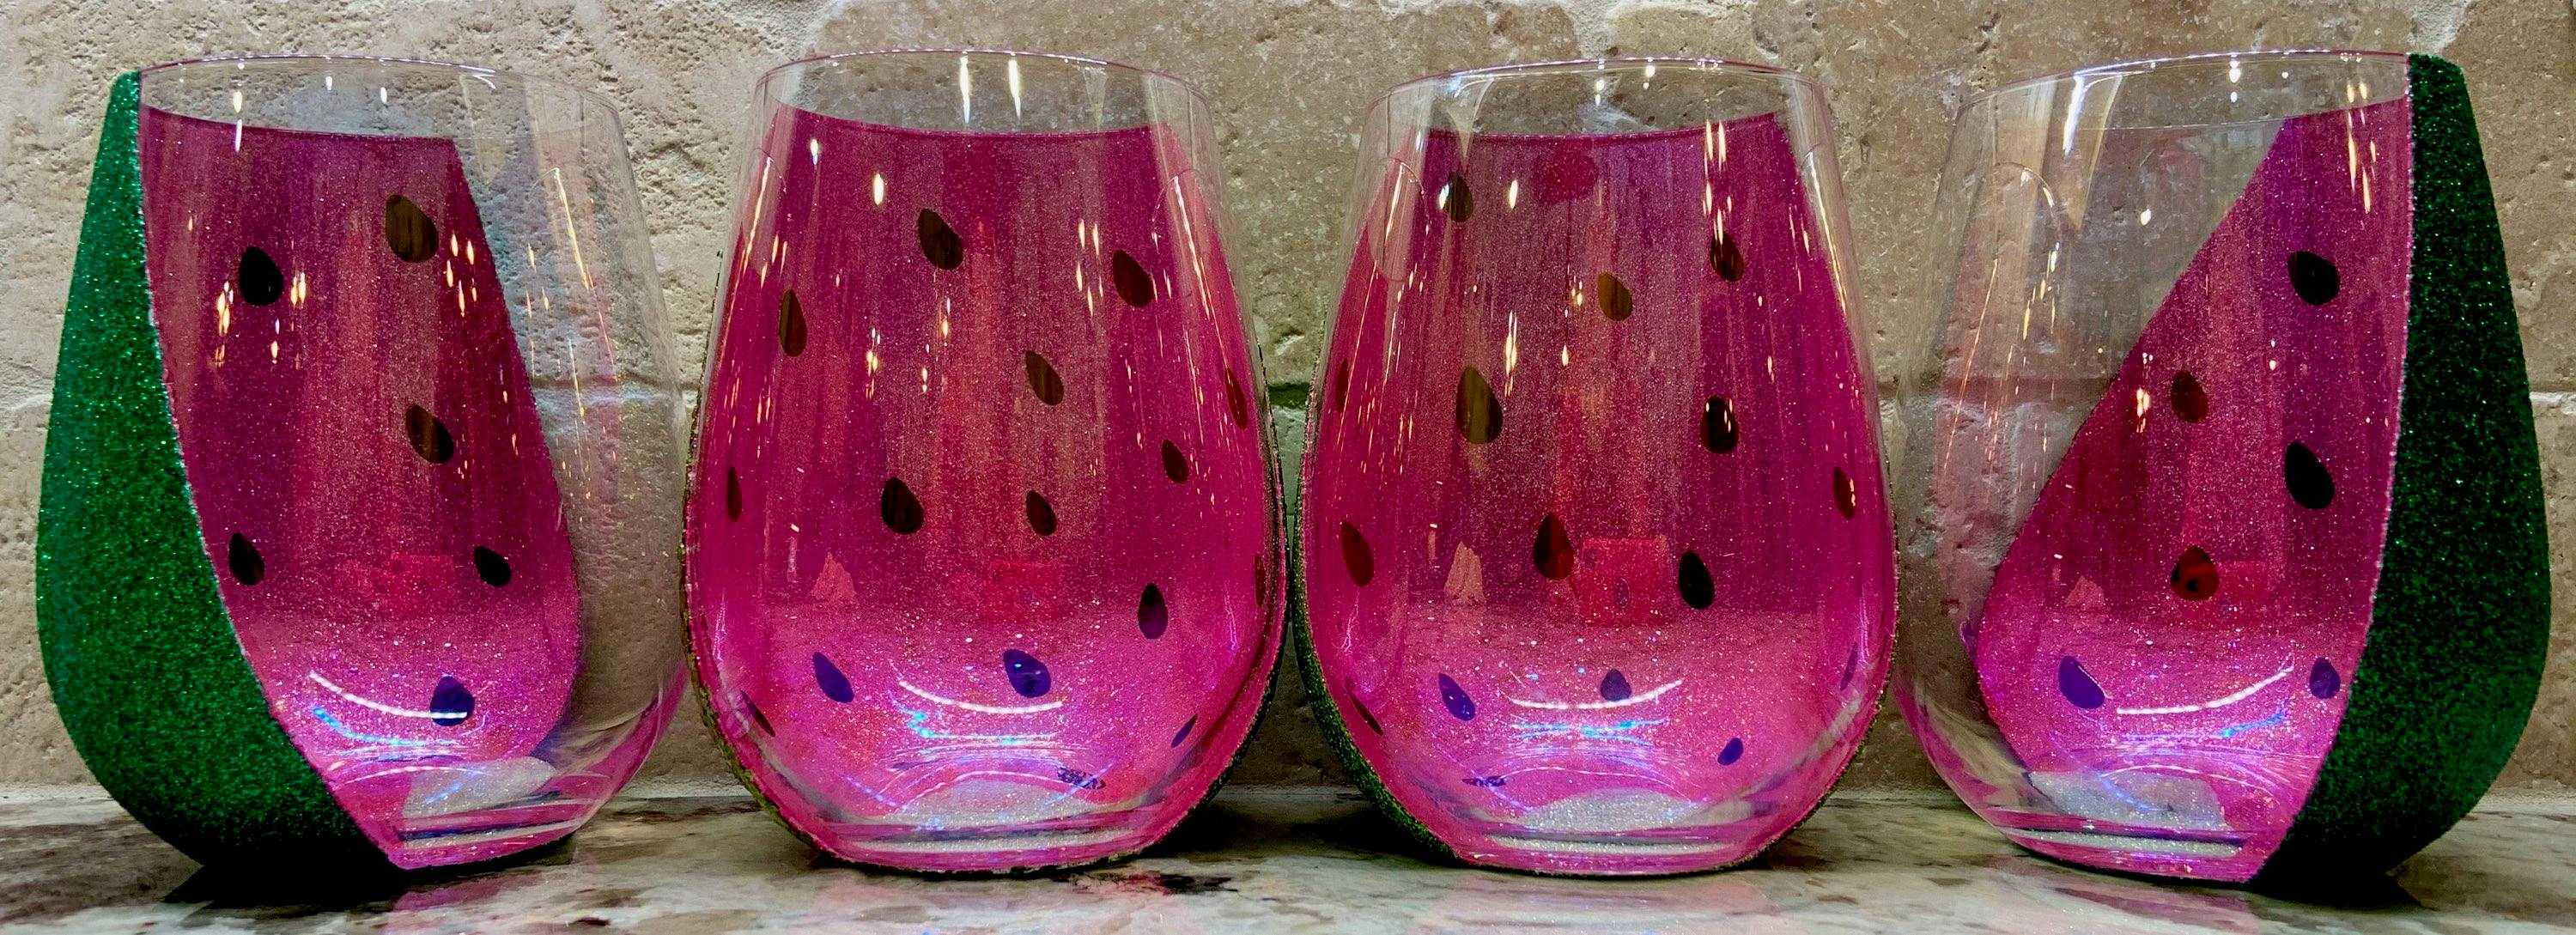 Watermelon Wine Glasses